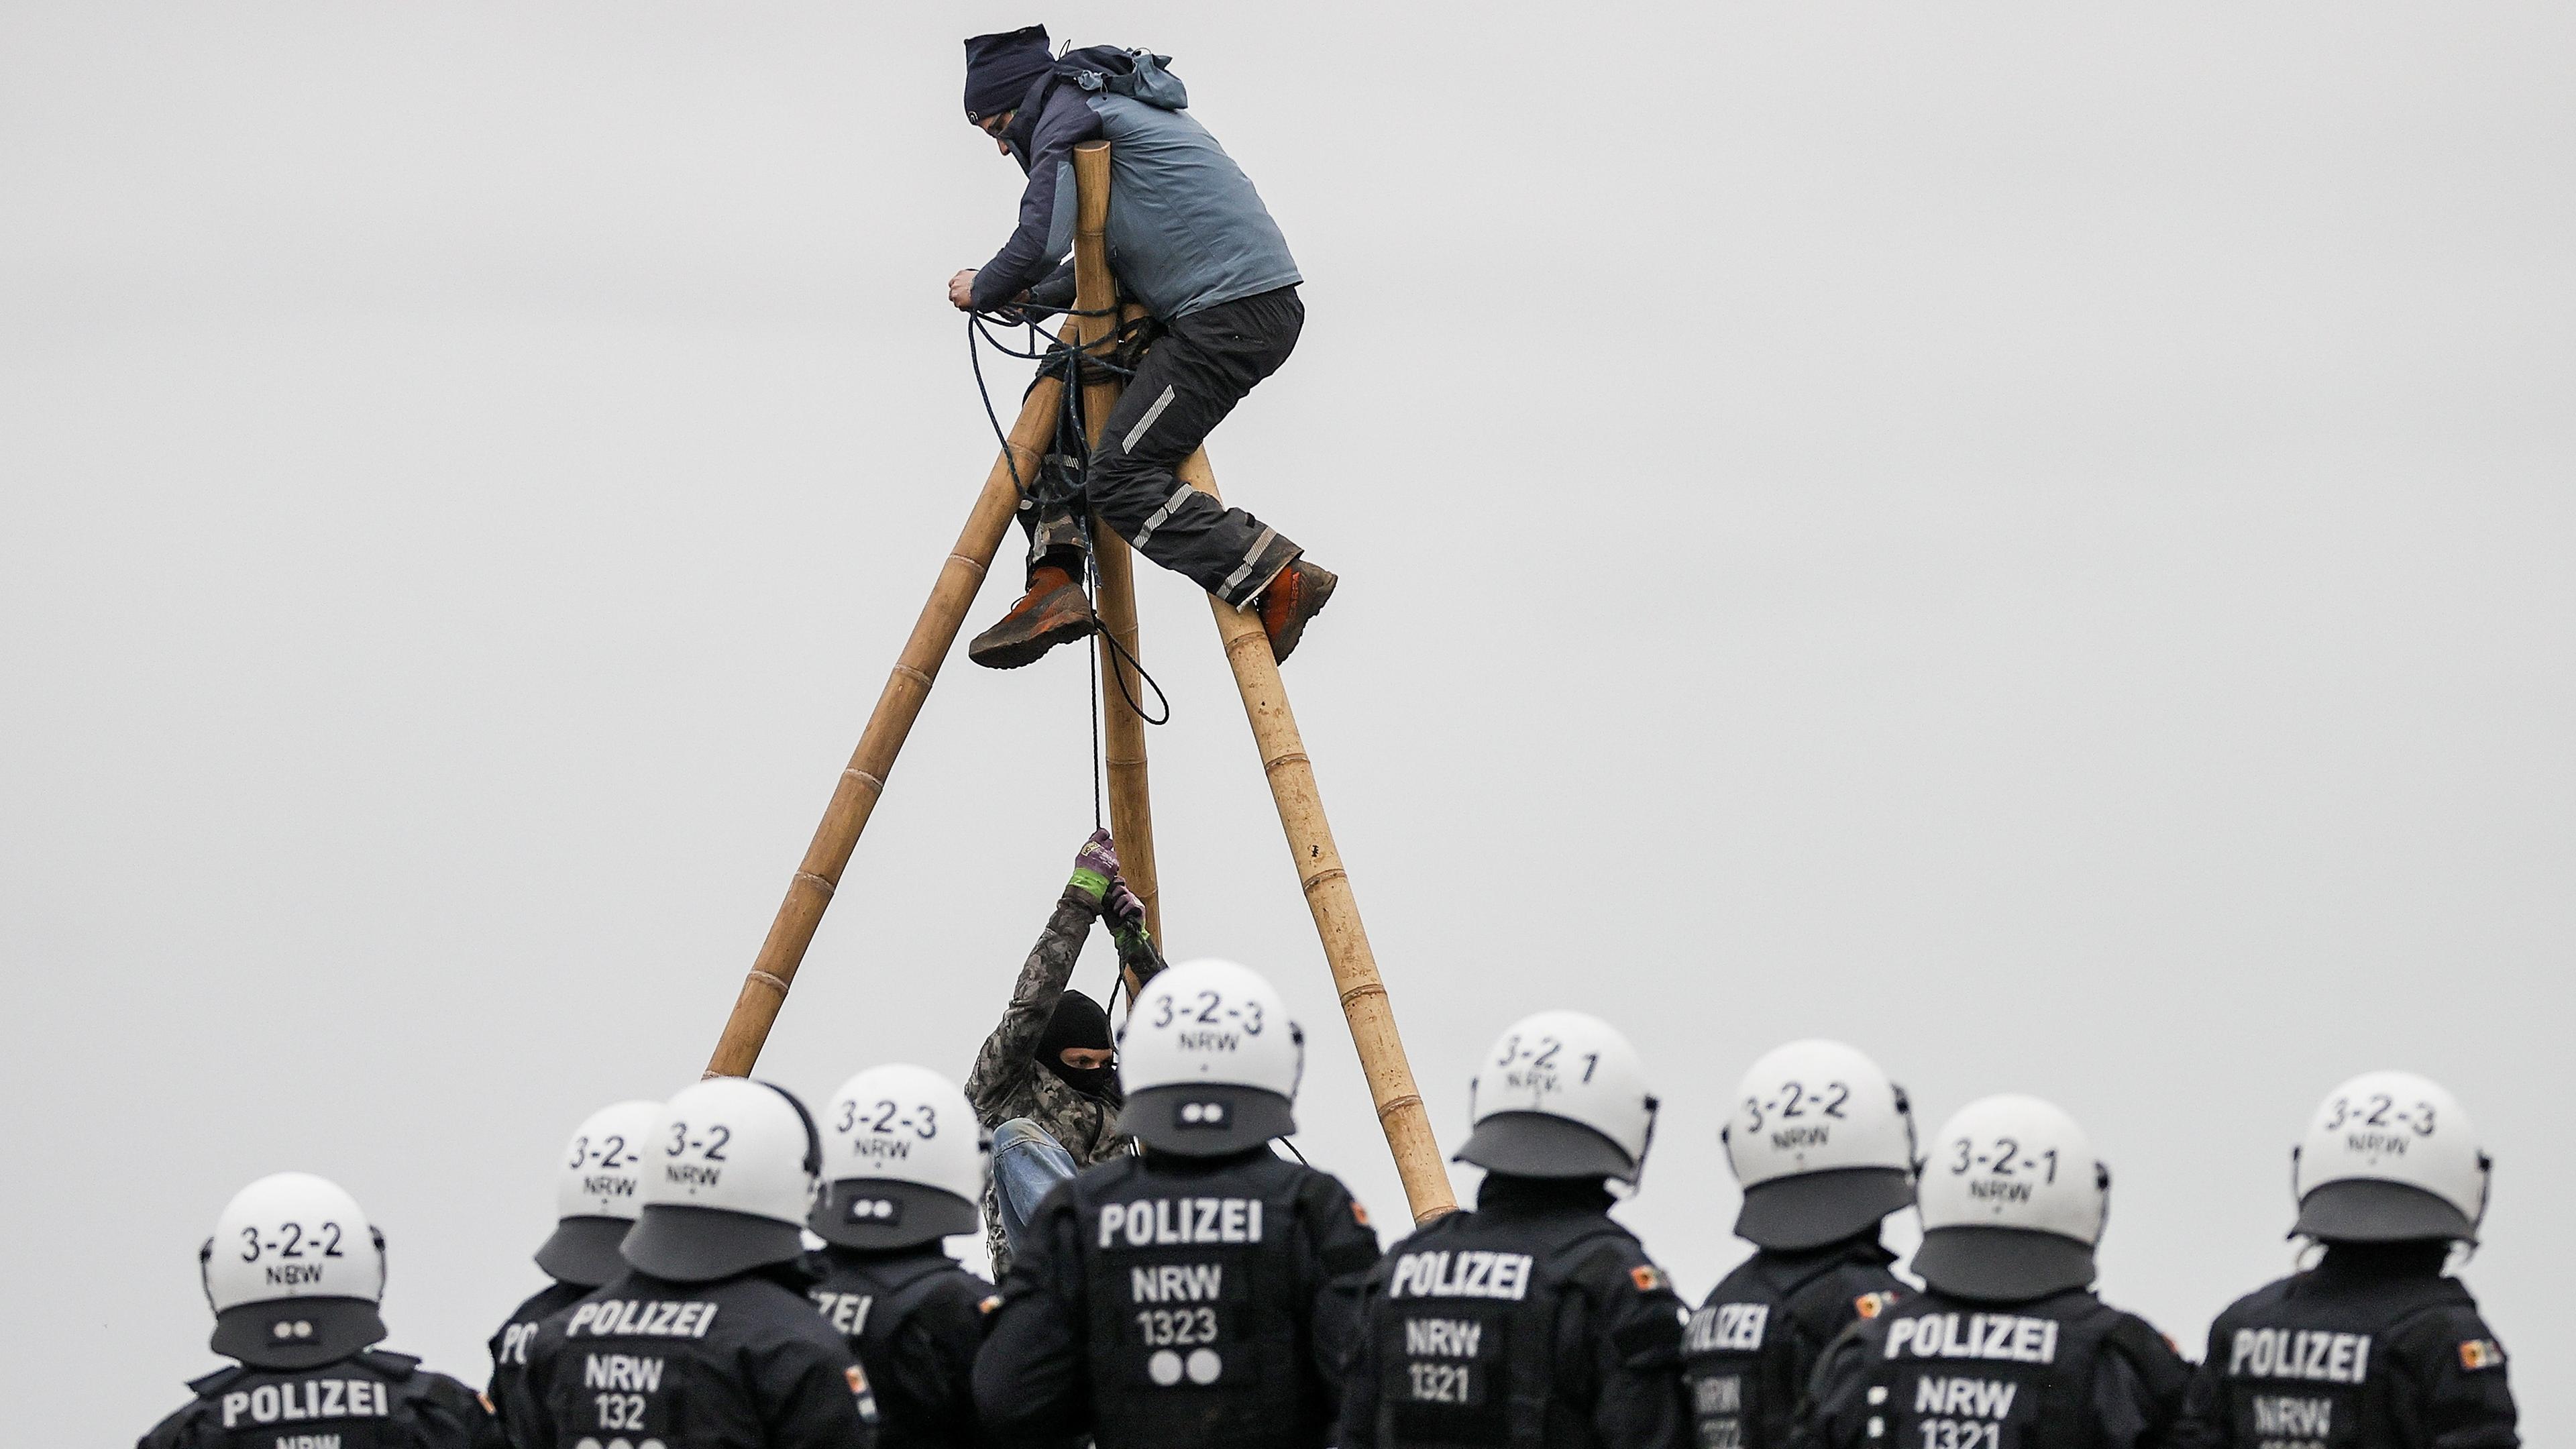 Aktivisten hängen in einem Stativ nahe Lützeraht, um die Räumung des Orts zu verhindern. Polizisten beobachten die Situation.